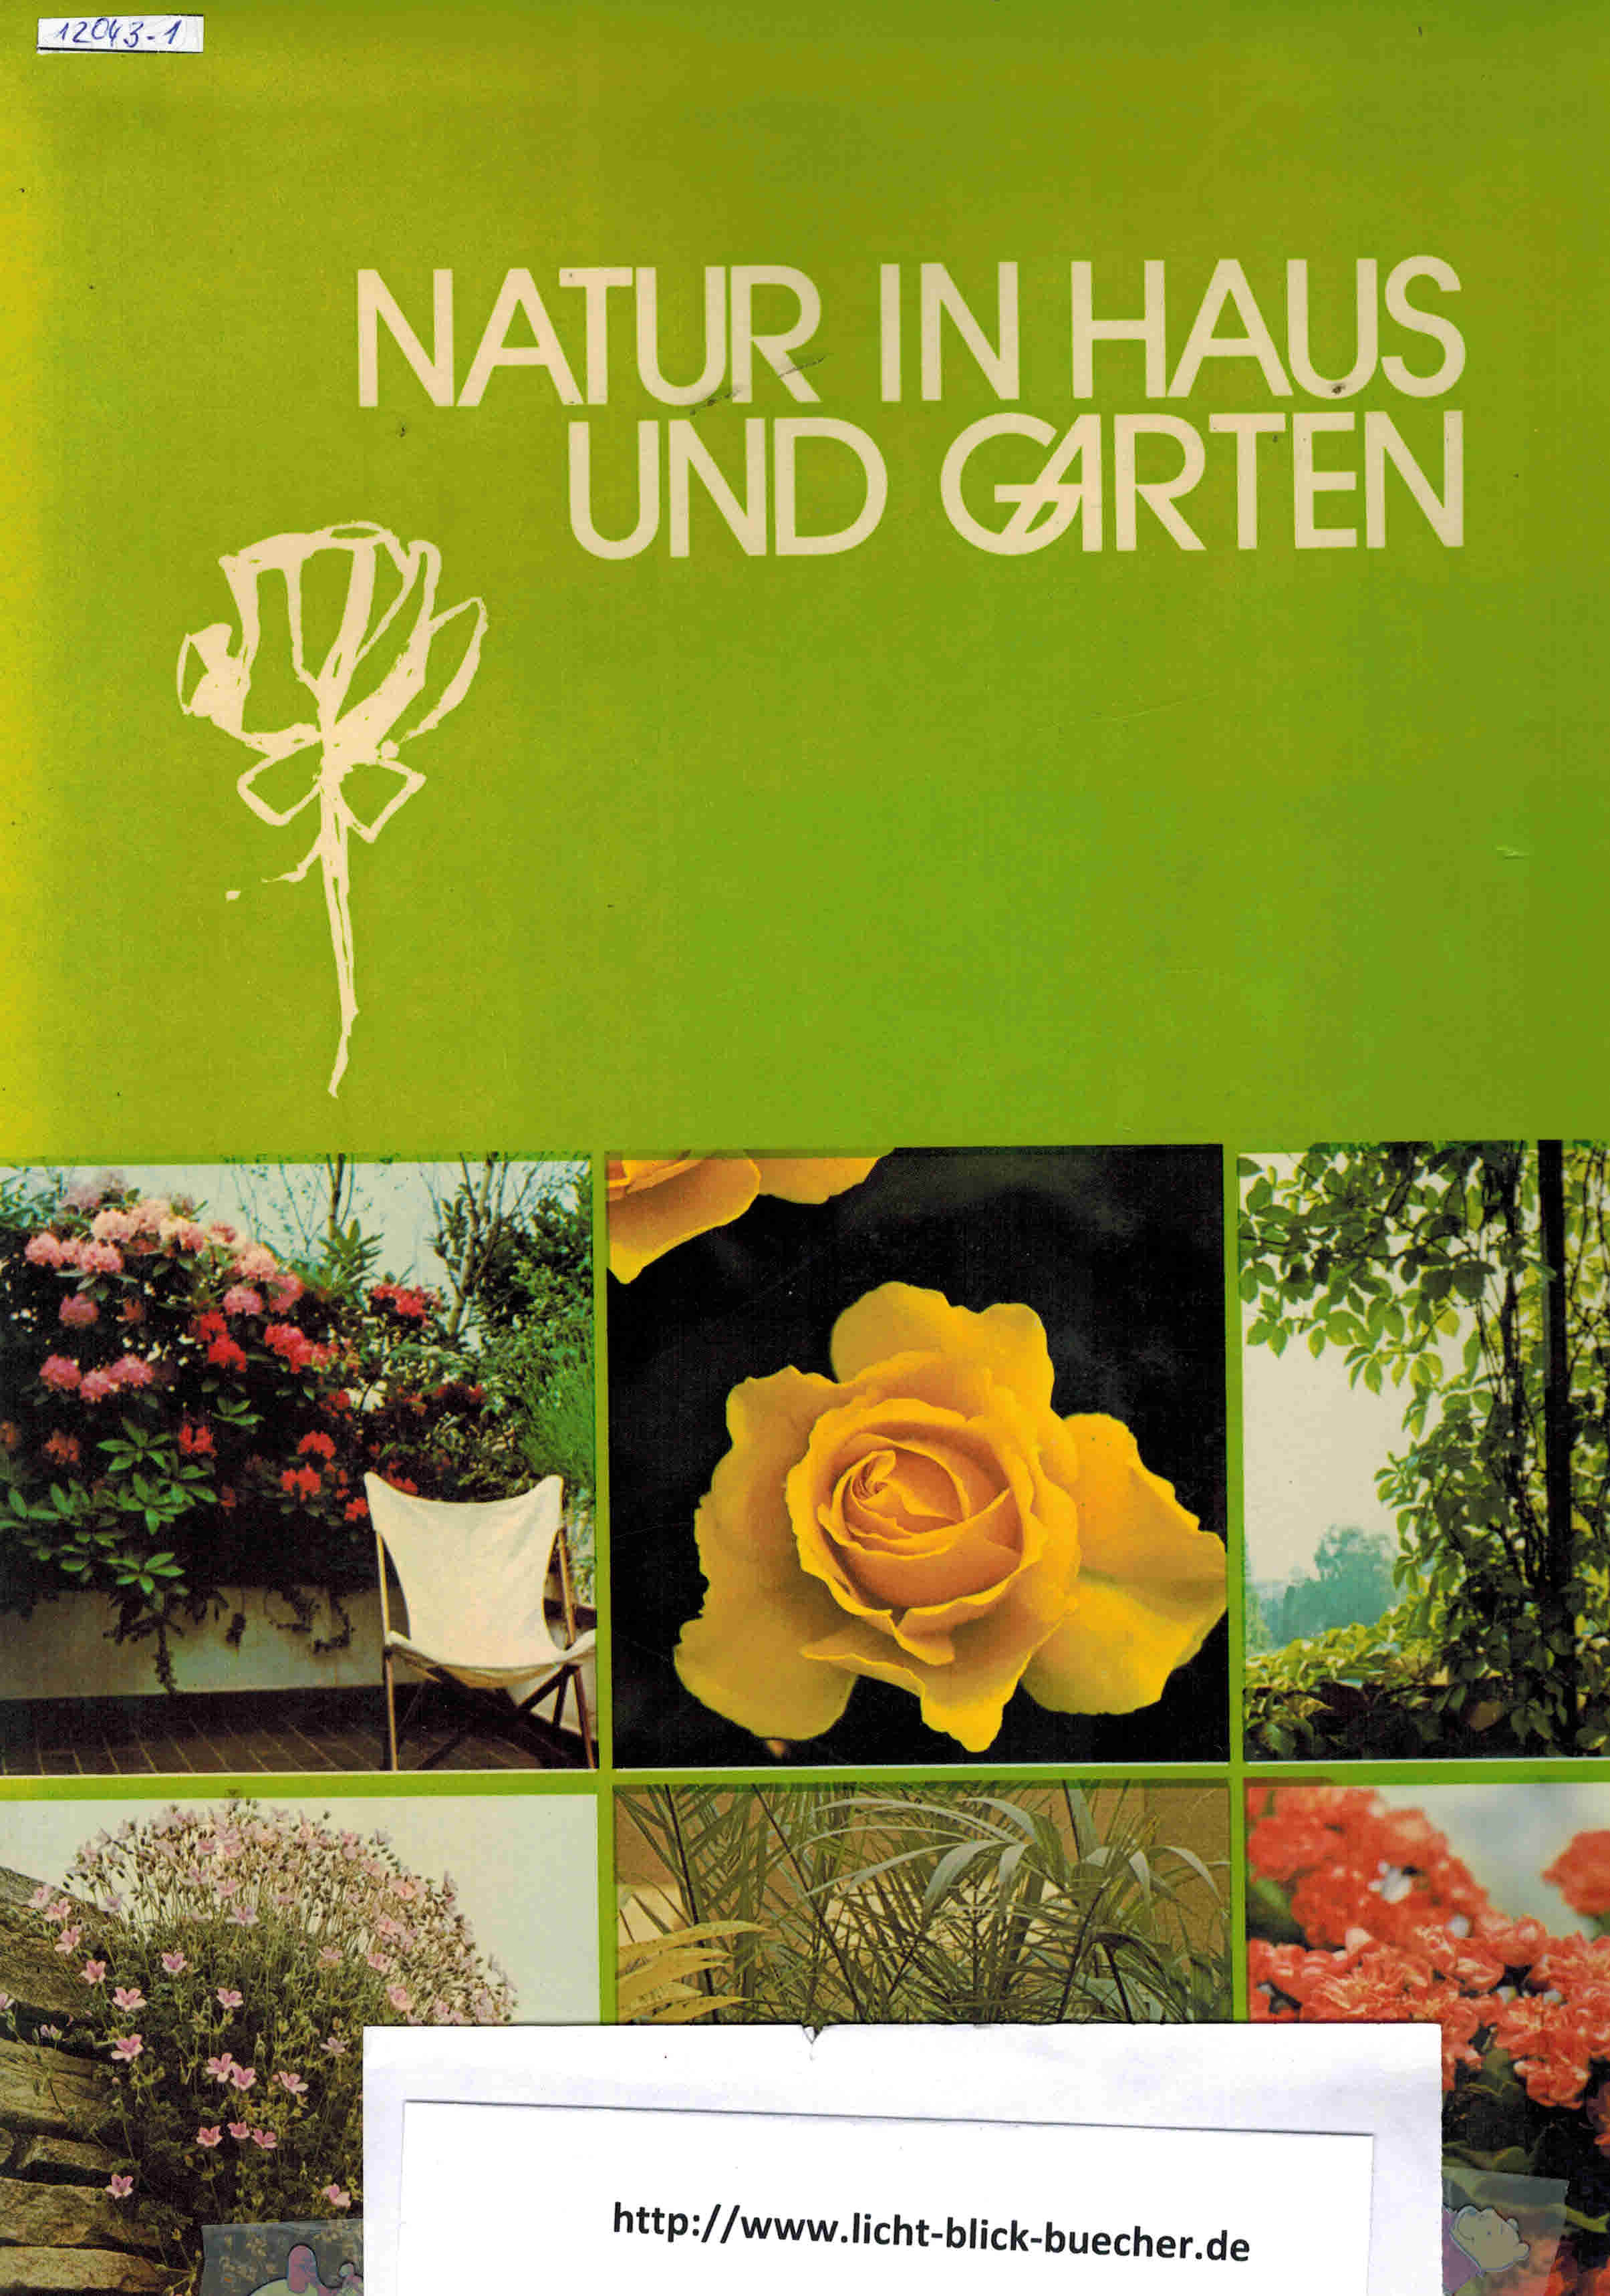 Natur in Haus und Gartenbearbeitet von Gerlinde Quenzer und Norbert Mehler